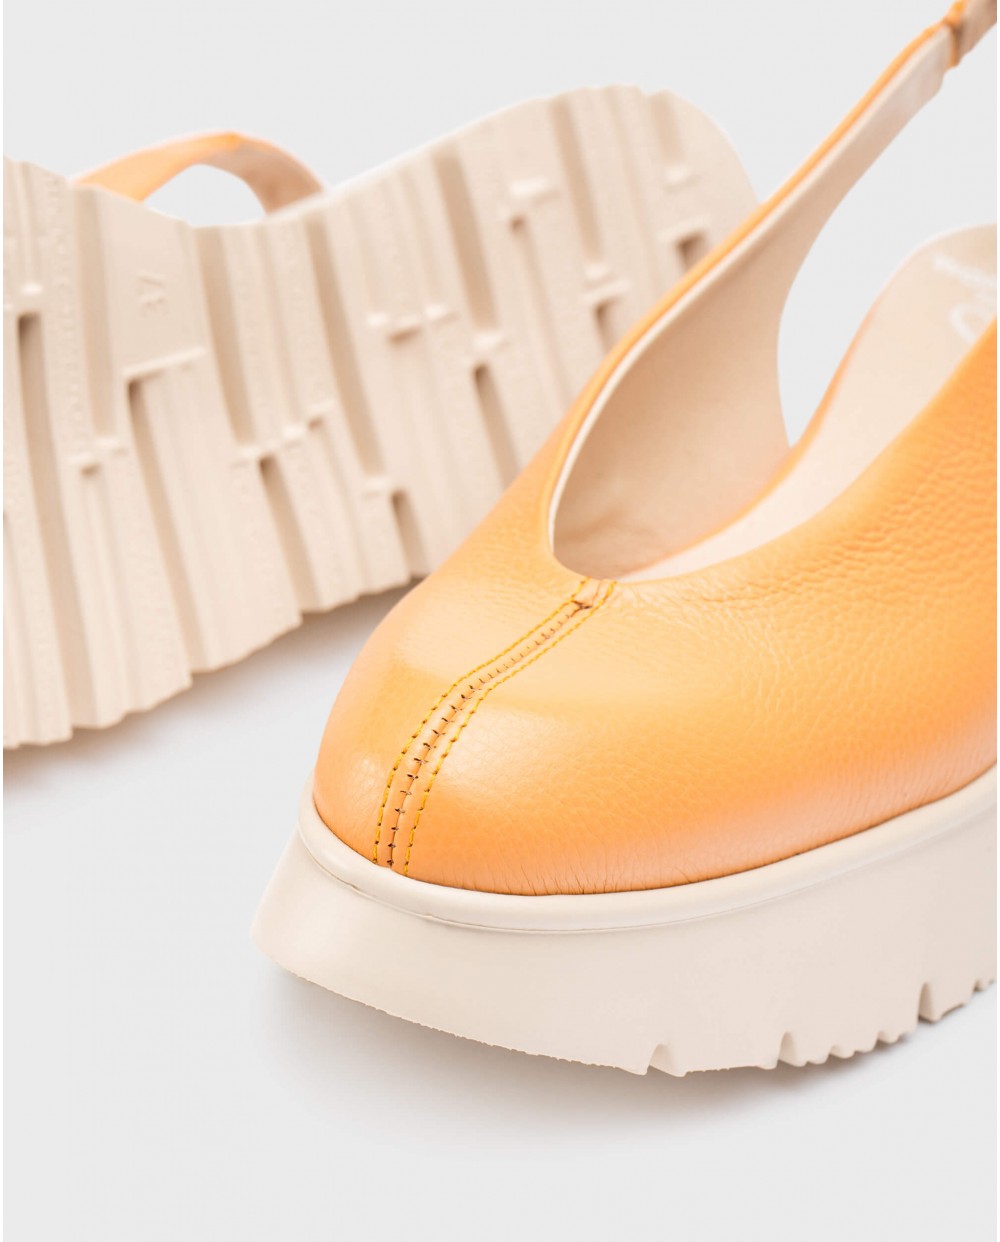 Wonders-Women shoes-Orange ZADAR Shoes